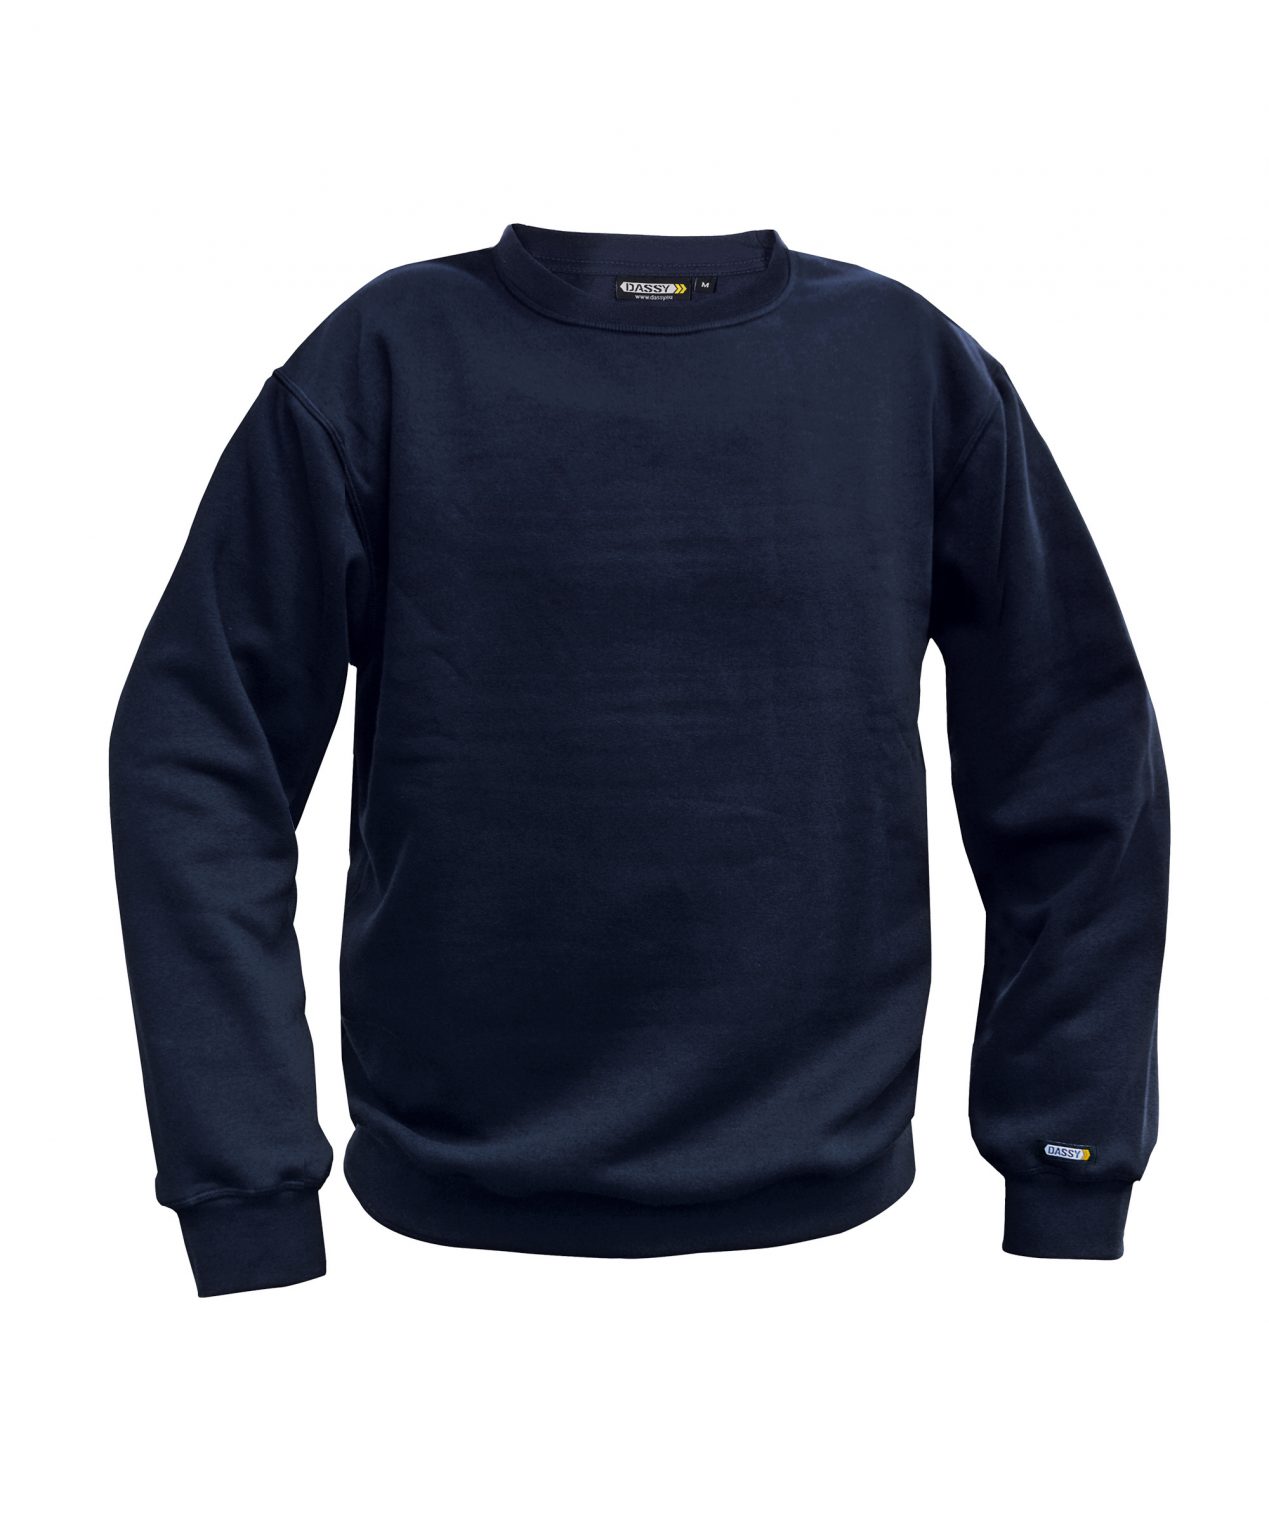 lionel sweatshirt navy front